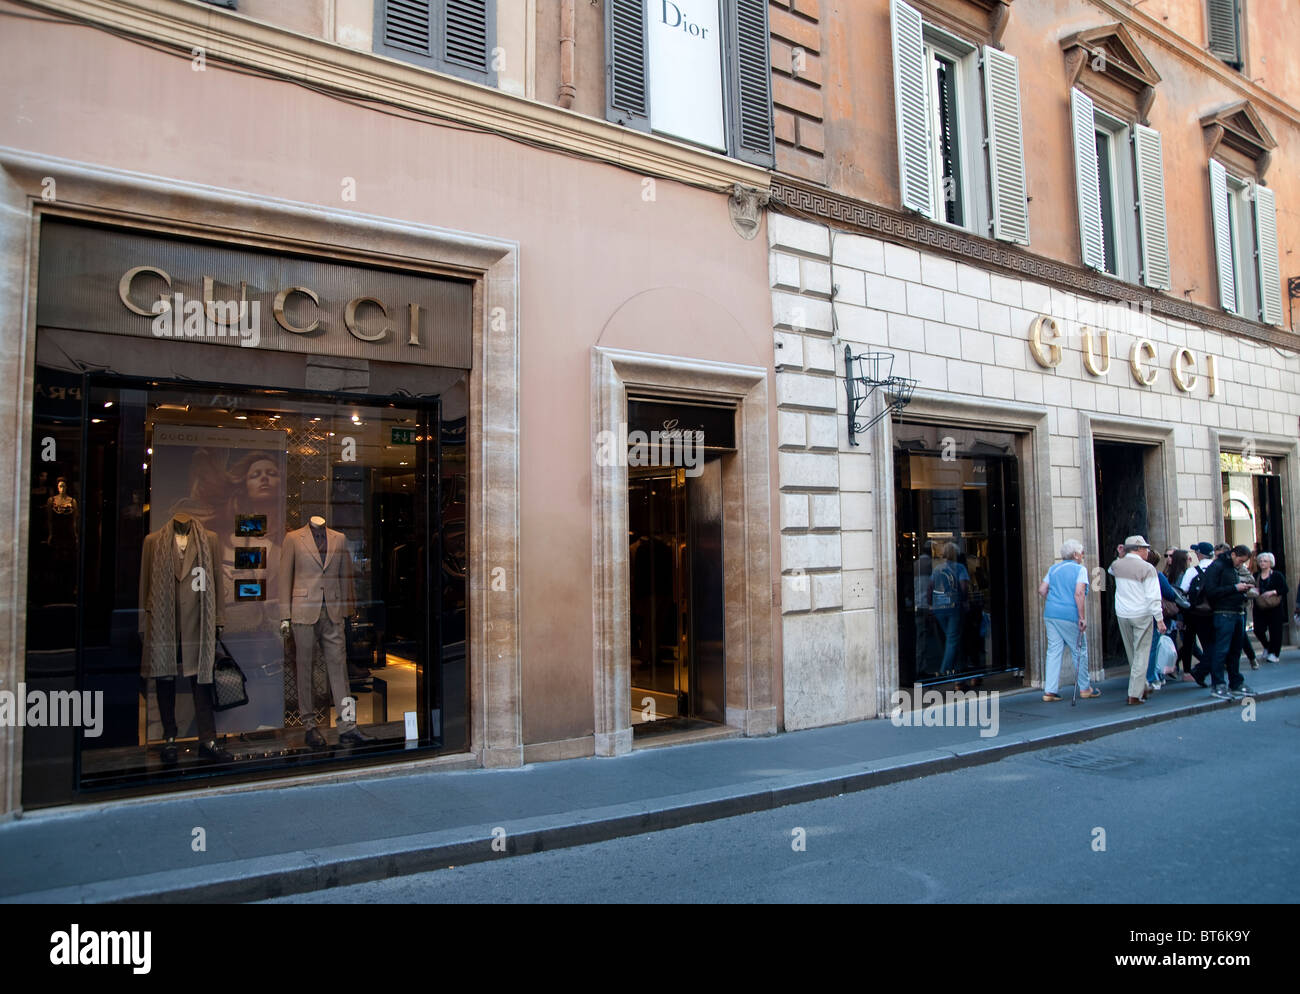 Gucci negozio anteriore in Via dei Condotti, Roma, Italia Foto stock - Alamy